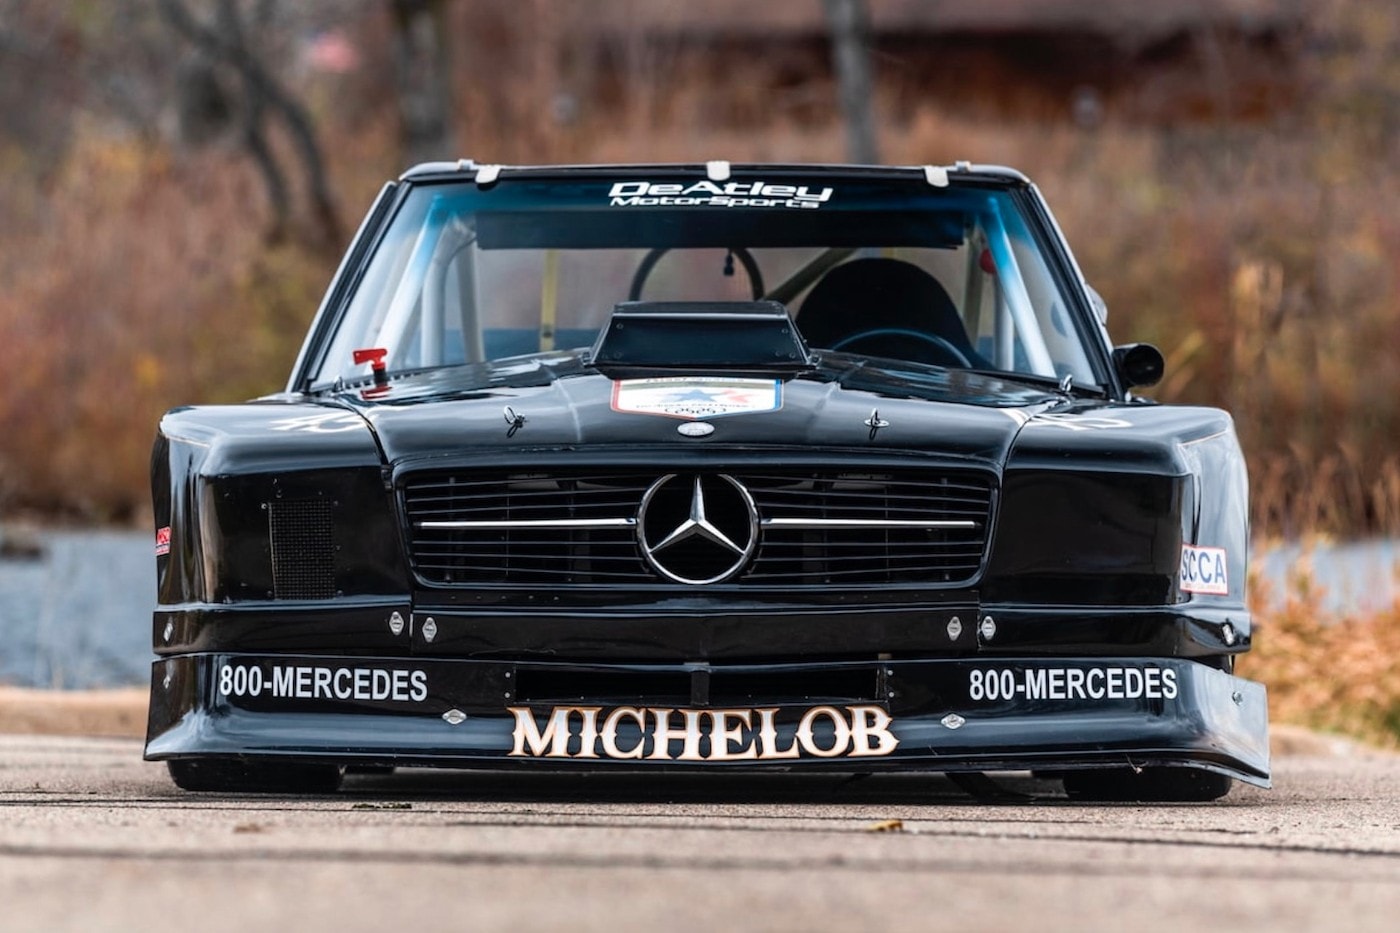 稀有 1982 年 Mercedes-Benz 450 SL Trans-Am 賽車即將展開拍賣